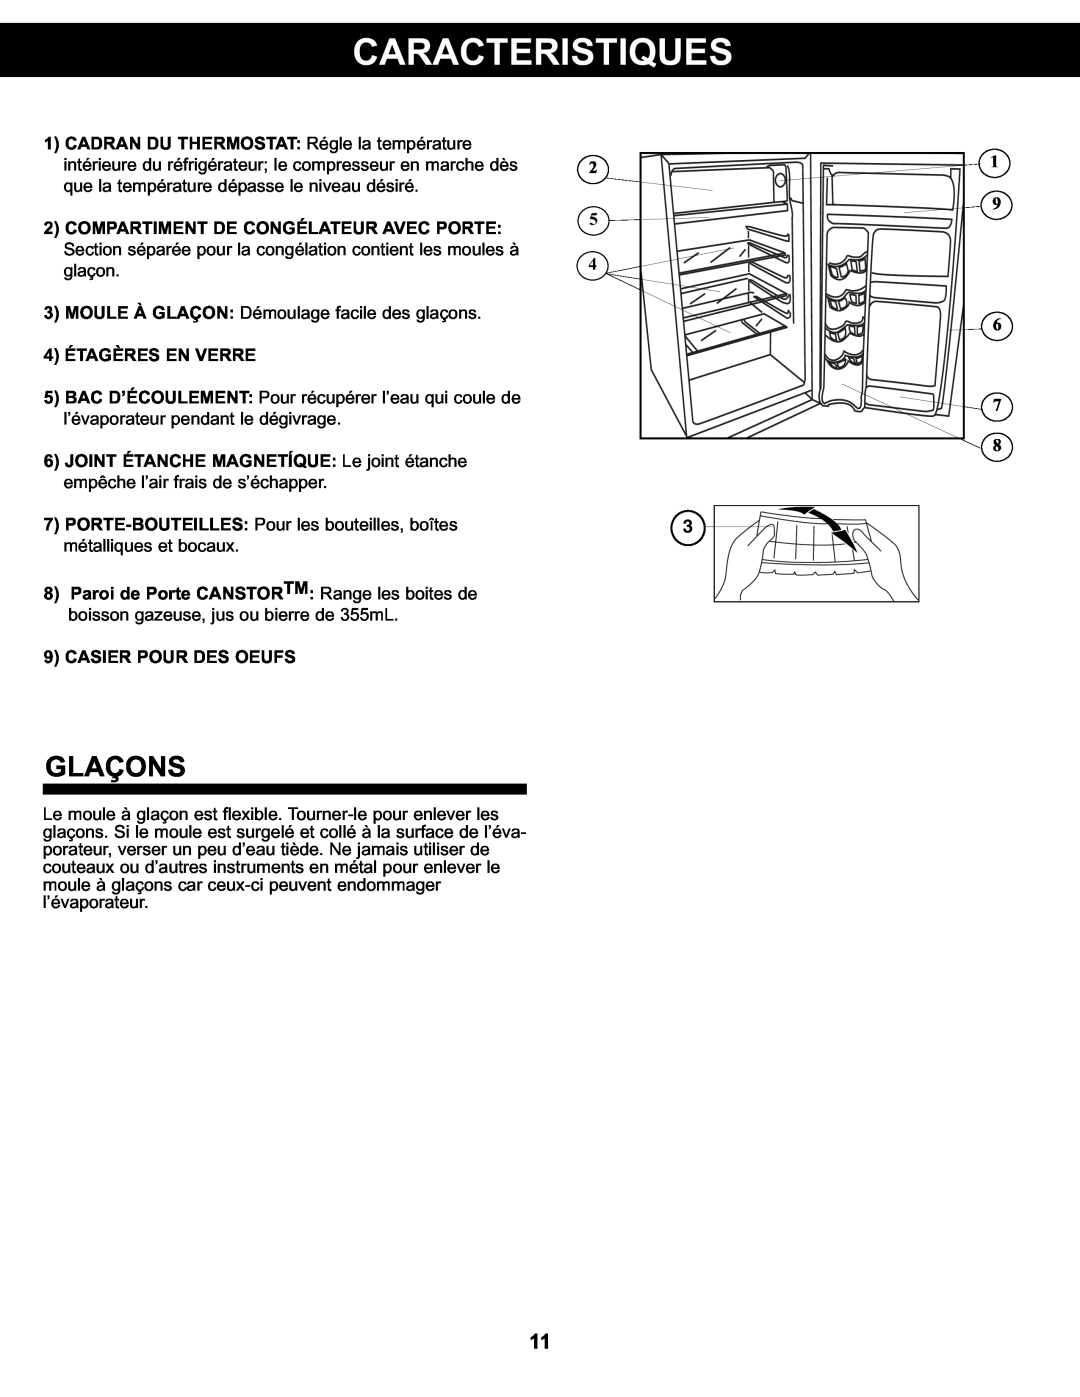 Sunbeam SBCR122BSL manual Caracteristiques, Glaçons, 4ÉTAGÈRES EN VERRE, 9CASIER POUR DES OEUFS 